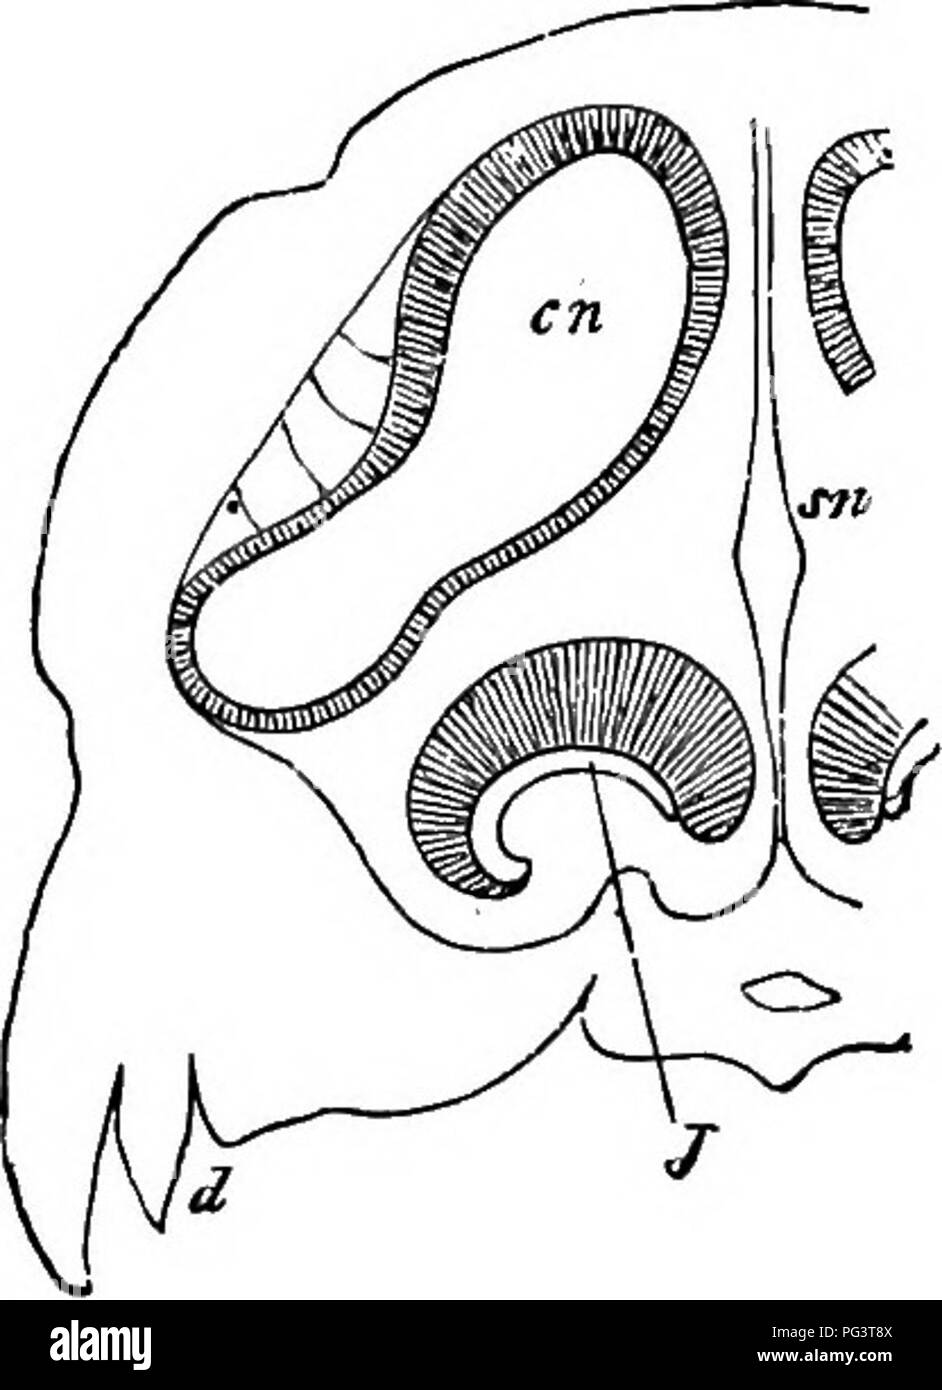 . Les éléments d'embryologie . L'embryologie..] La xir ORGANE NASAL. 399 à la fenestra ovalis. Ces osselets, qui découlent de l'maialy et arcs mandibulaires hyoïde (m'de p. 403), sont d'abord ancrées dans le tissu conjonctif dans le voisinage de la cavité tympanique, mais sur le développement complet de cette cavité, devenir appareptly qu'il contient, bien qu'enveloppée dans la muqueuse qui tapisse. Organe nasal. Dans Mammalia l'formation de la partie antérieure et postérieure des narines est le même que chez les oiseaux ; mais une conséquence de l'intérieur du canal entre les deux ouvertures se présente Banque D'Images